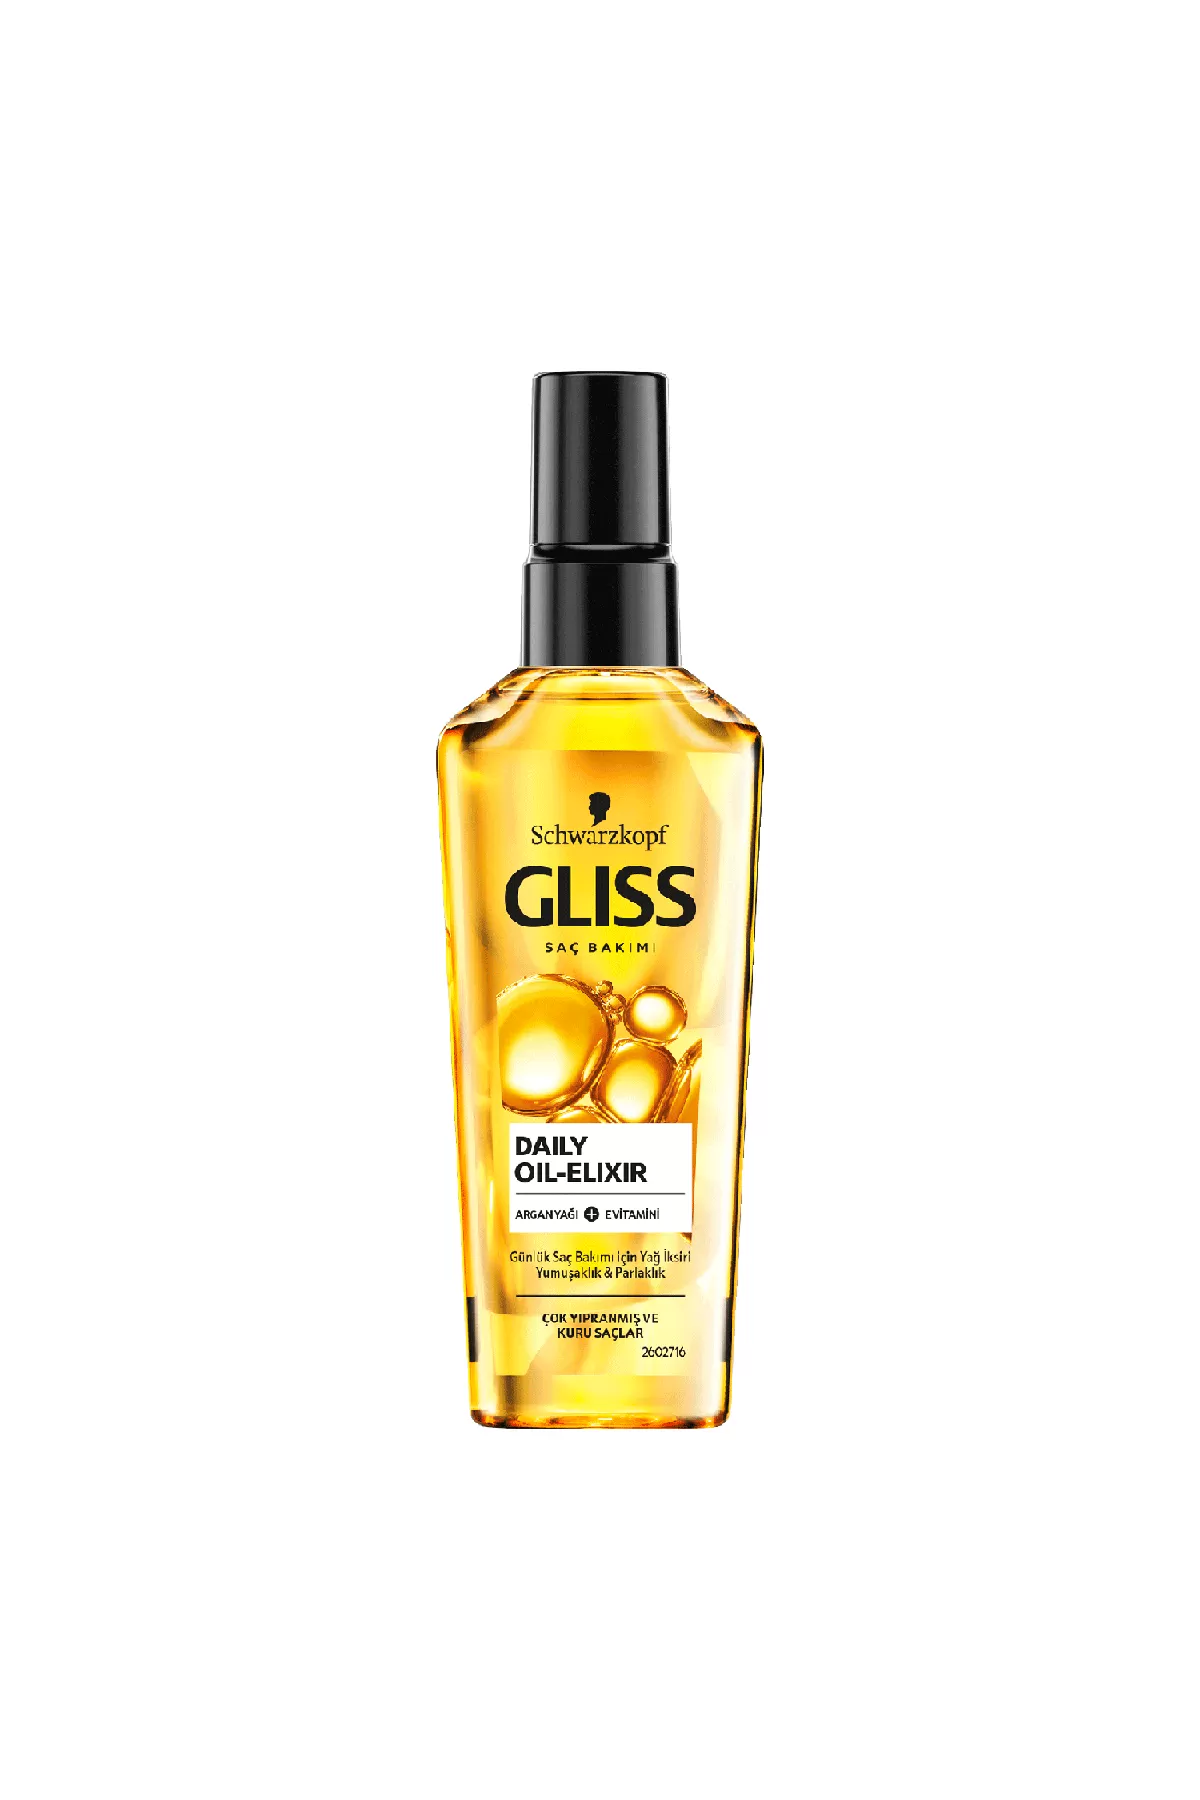 حاوی آر گان و ویتامین E ترمیم کننده موهای آسیب دیده مناسب برای موهای خشک و آسیب دیده گلیس GLISS روغن مو آرگان